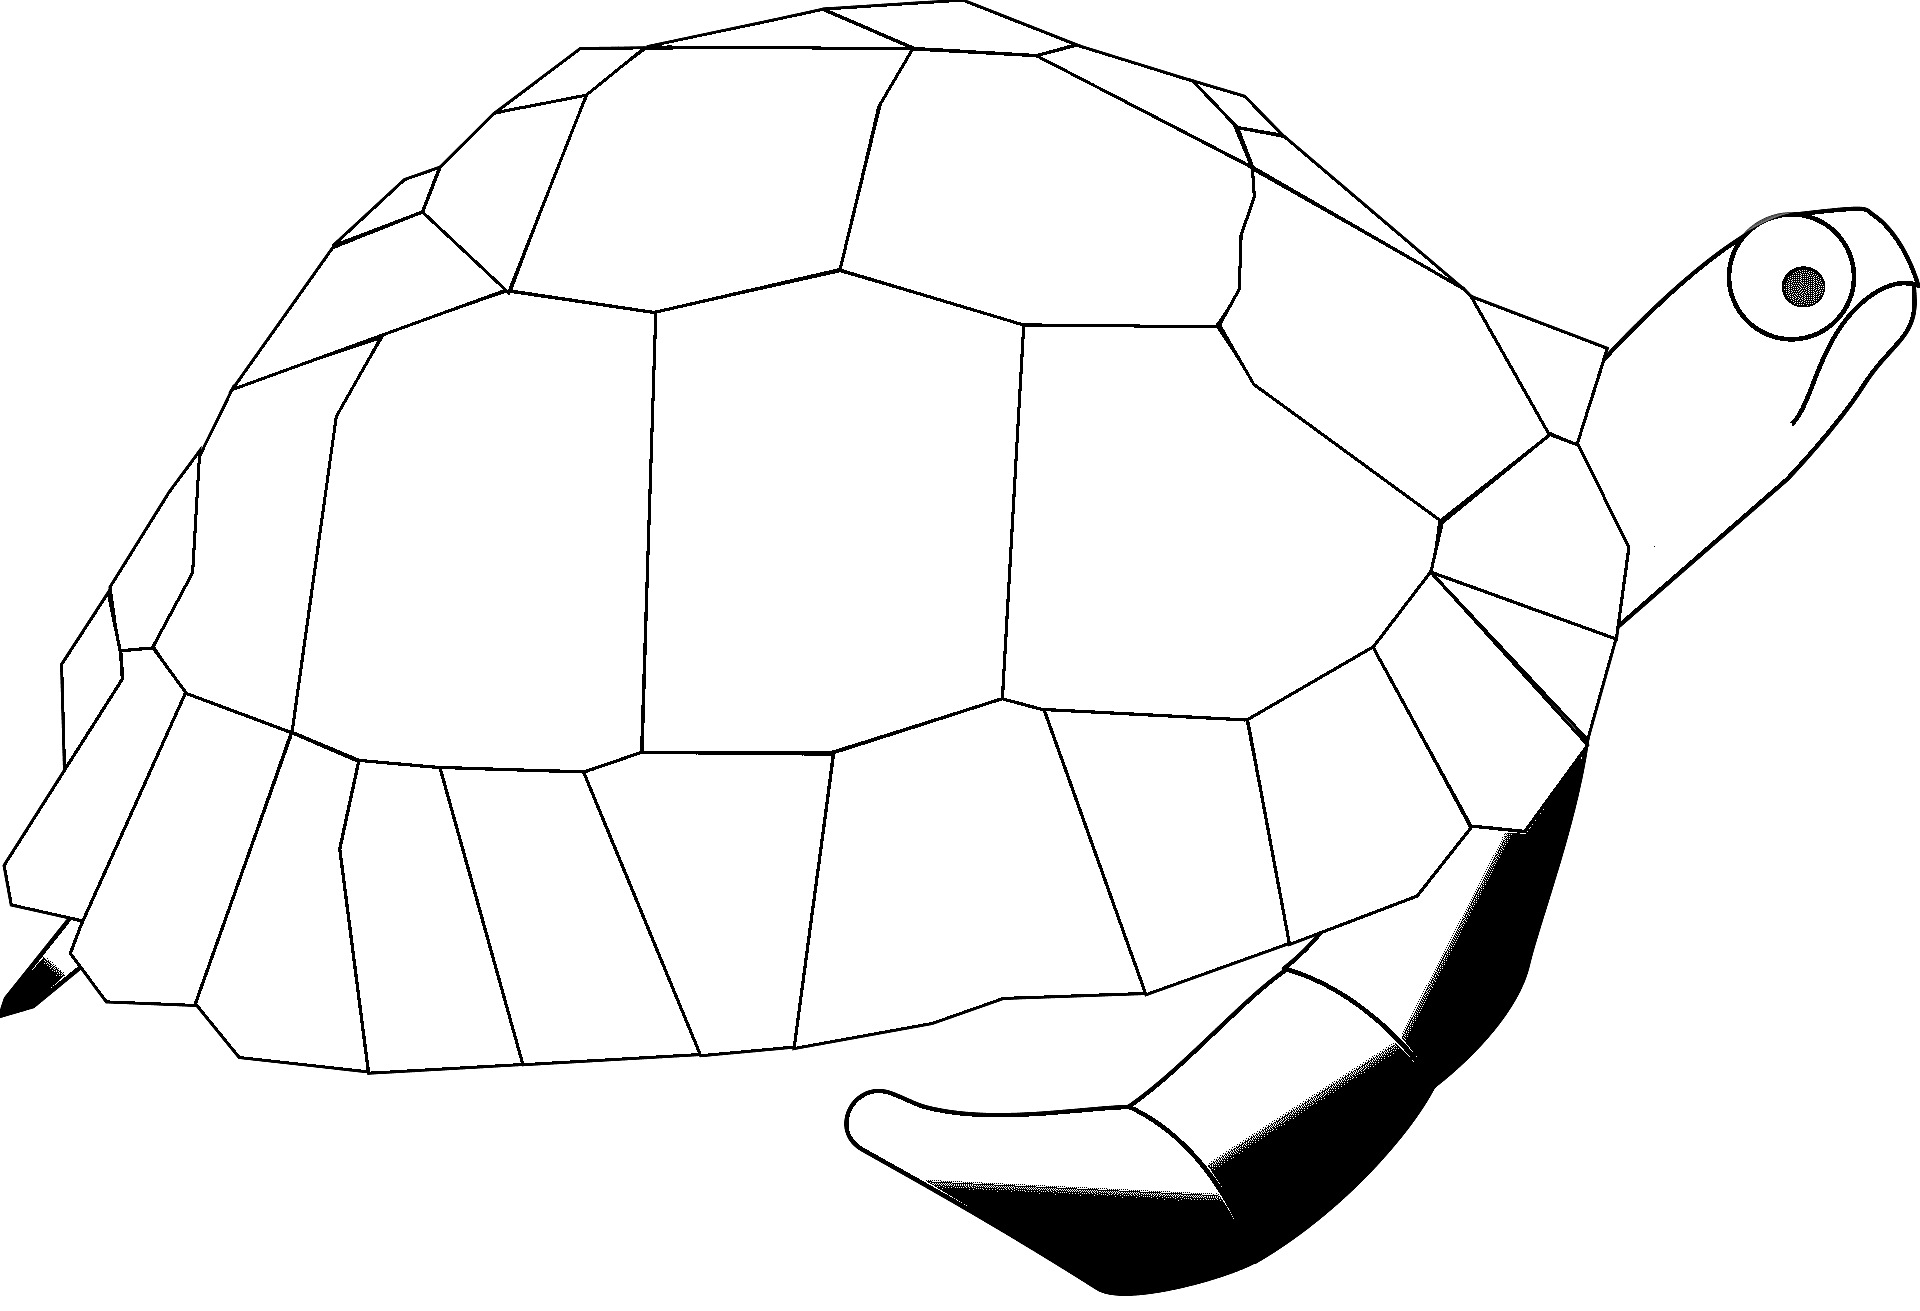 Dibujo para colorear de una tortuga